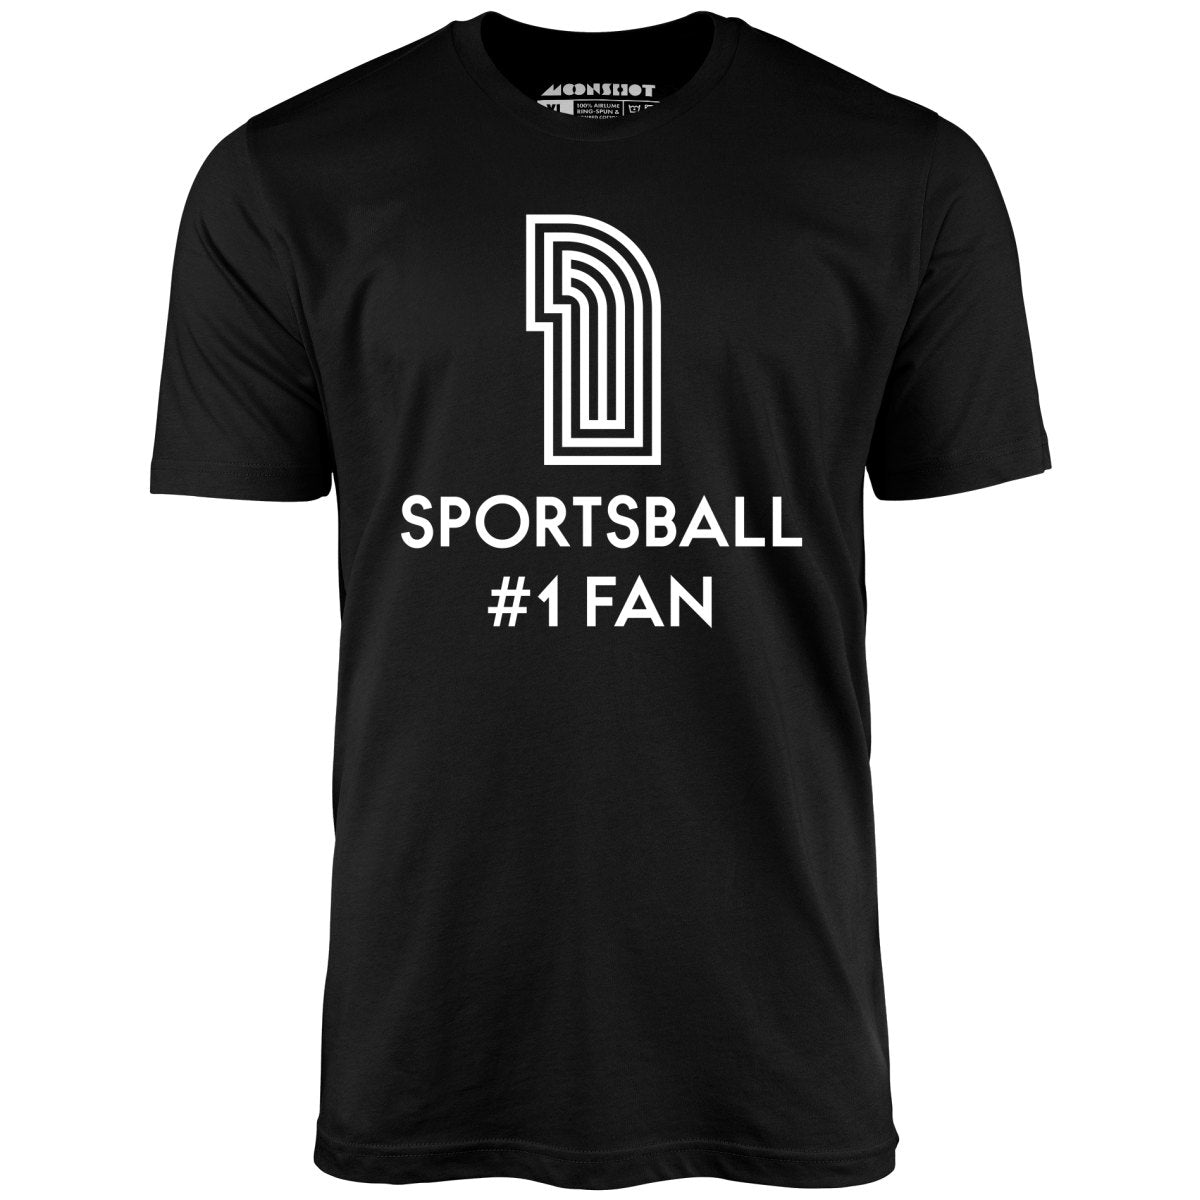 Sportsball #1 Fan - Unisex T-Shirt